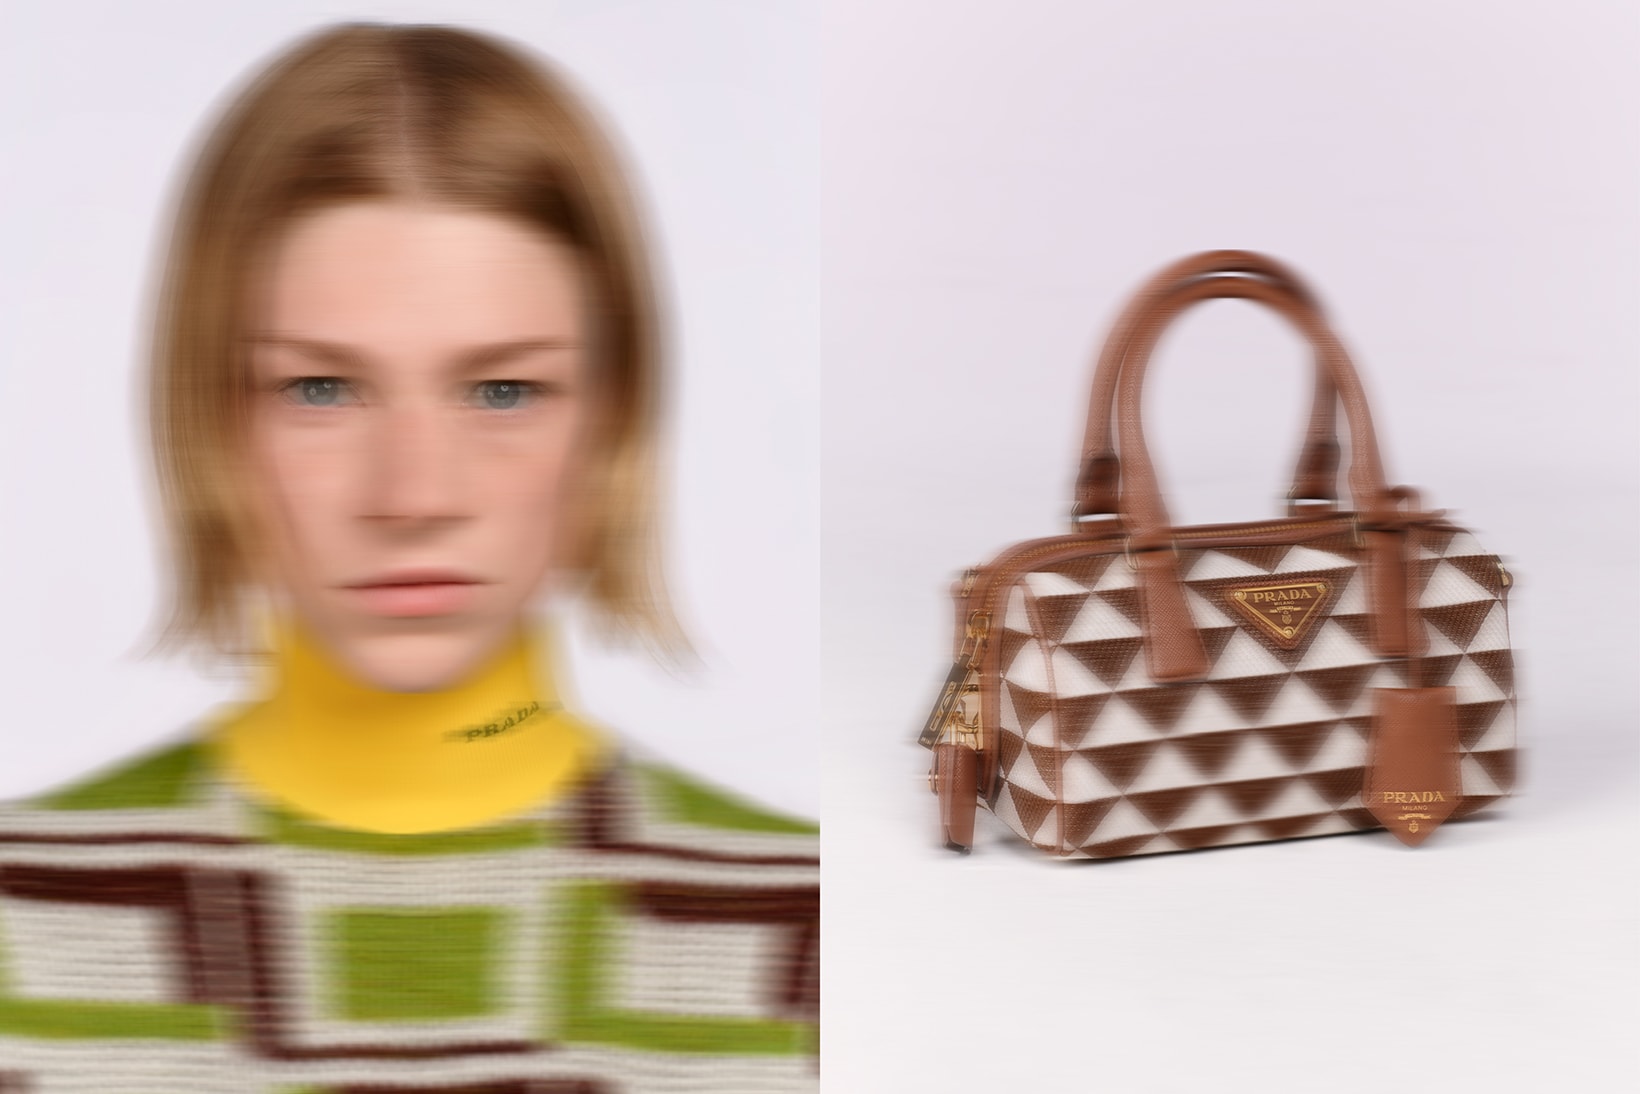 Prada Symbole Handbag Campaign Hunter Schafer Designer 